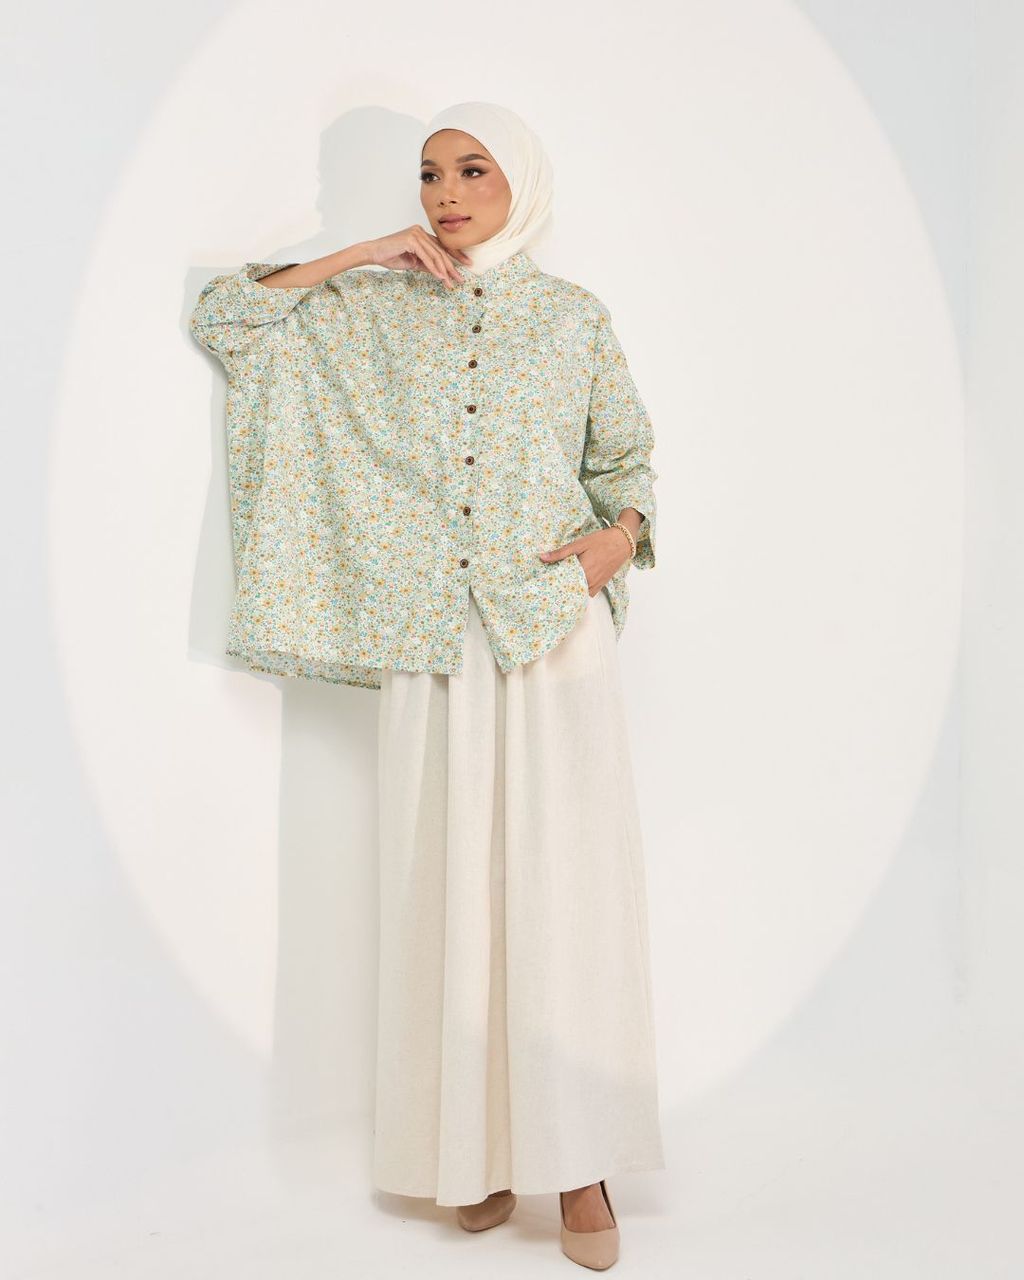 haura-wear-lucy-blouse-lengan panjang-kemeja labuh-baju labuh-tunic-kaftan-midi-dress-blouse-shirt-long-sleeve-baju-muslimah-baju-perempuan-shirt-blouse-baju (4)